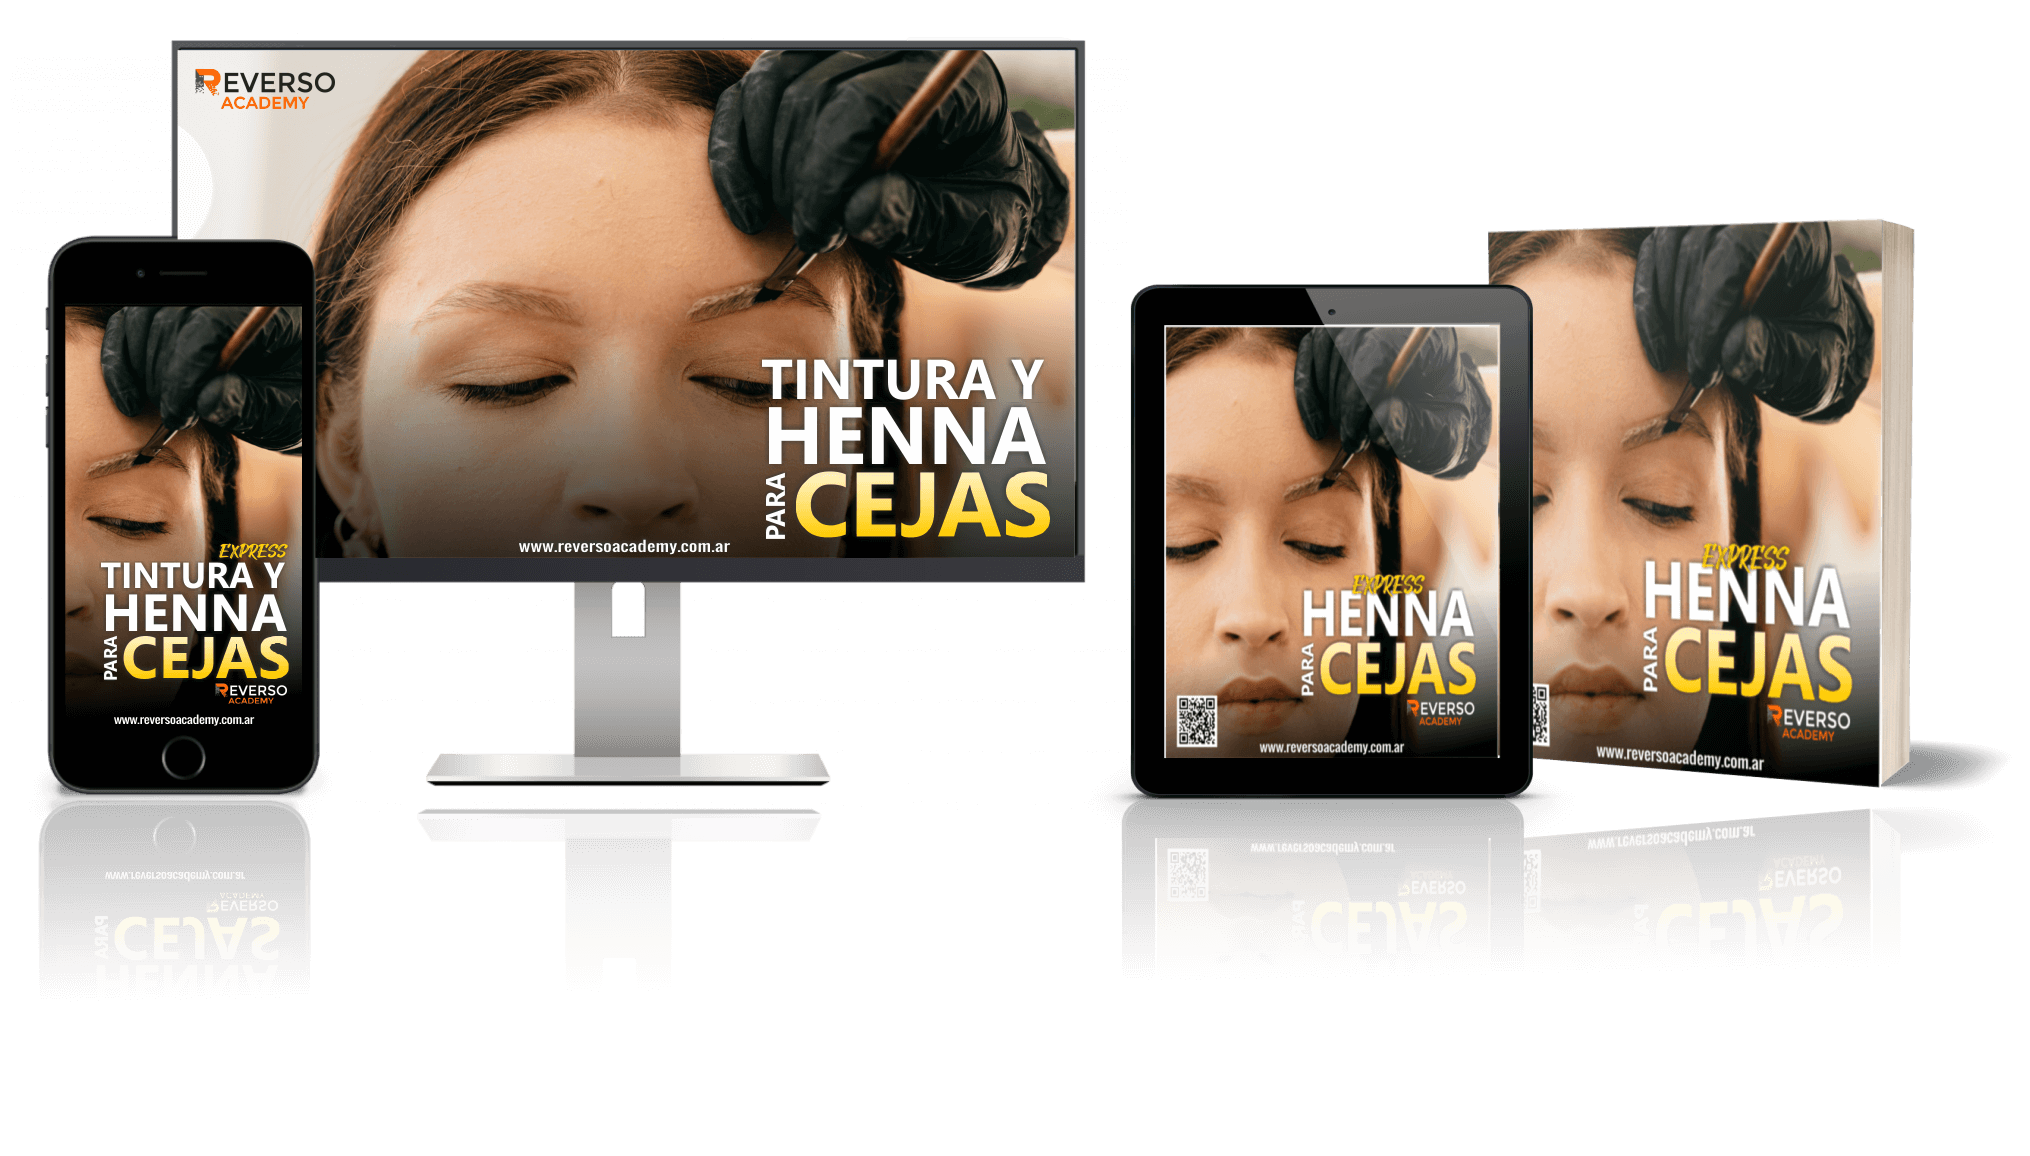 cover HENNA PARA CEJAS EXPRESS by Reverso Academy-masterclasses-cursos online-estetica-pc-celu